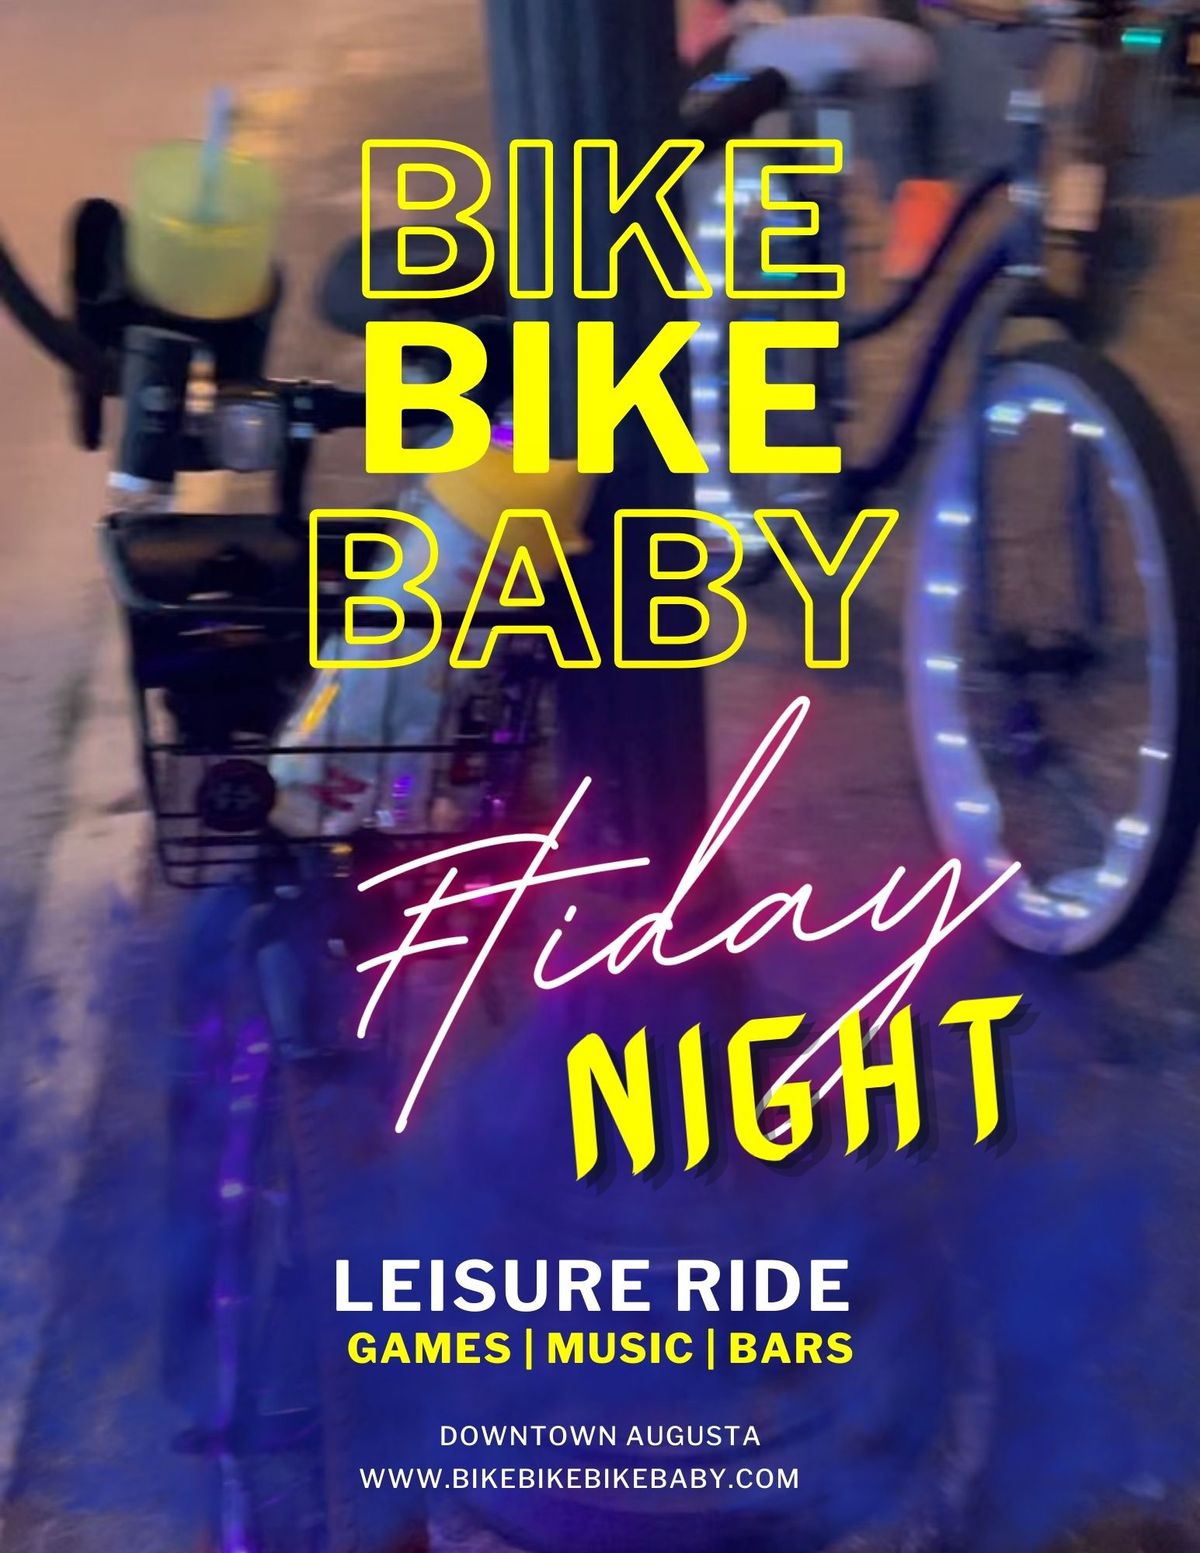 Friday Night Leisure Ride